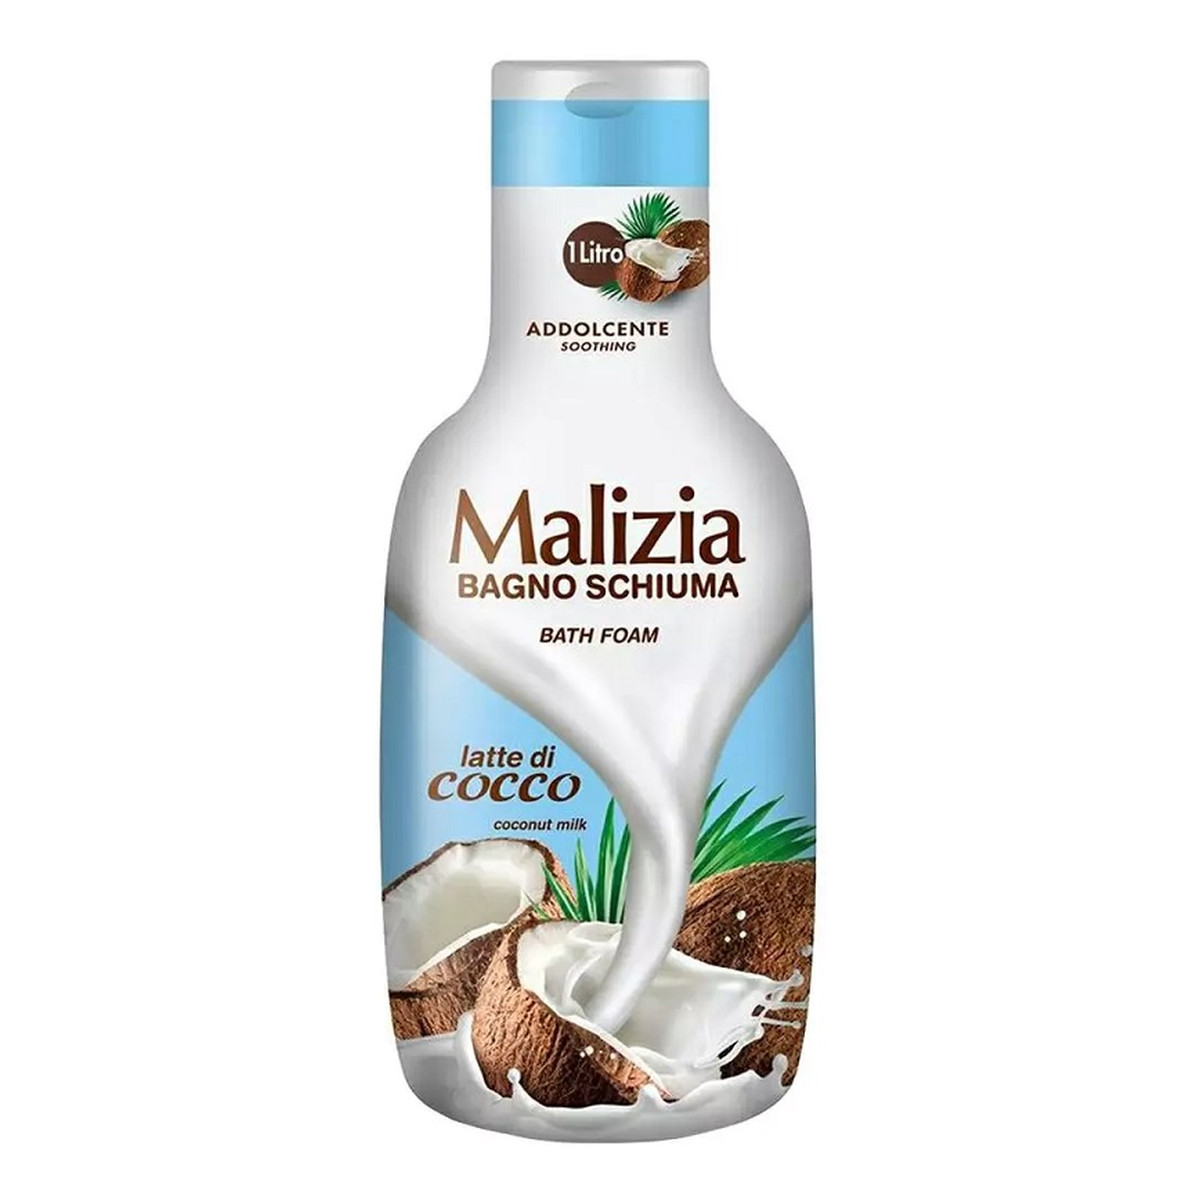 Malizia Bath foam płyn do kąpieli kokos 1000ml